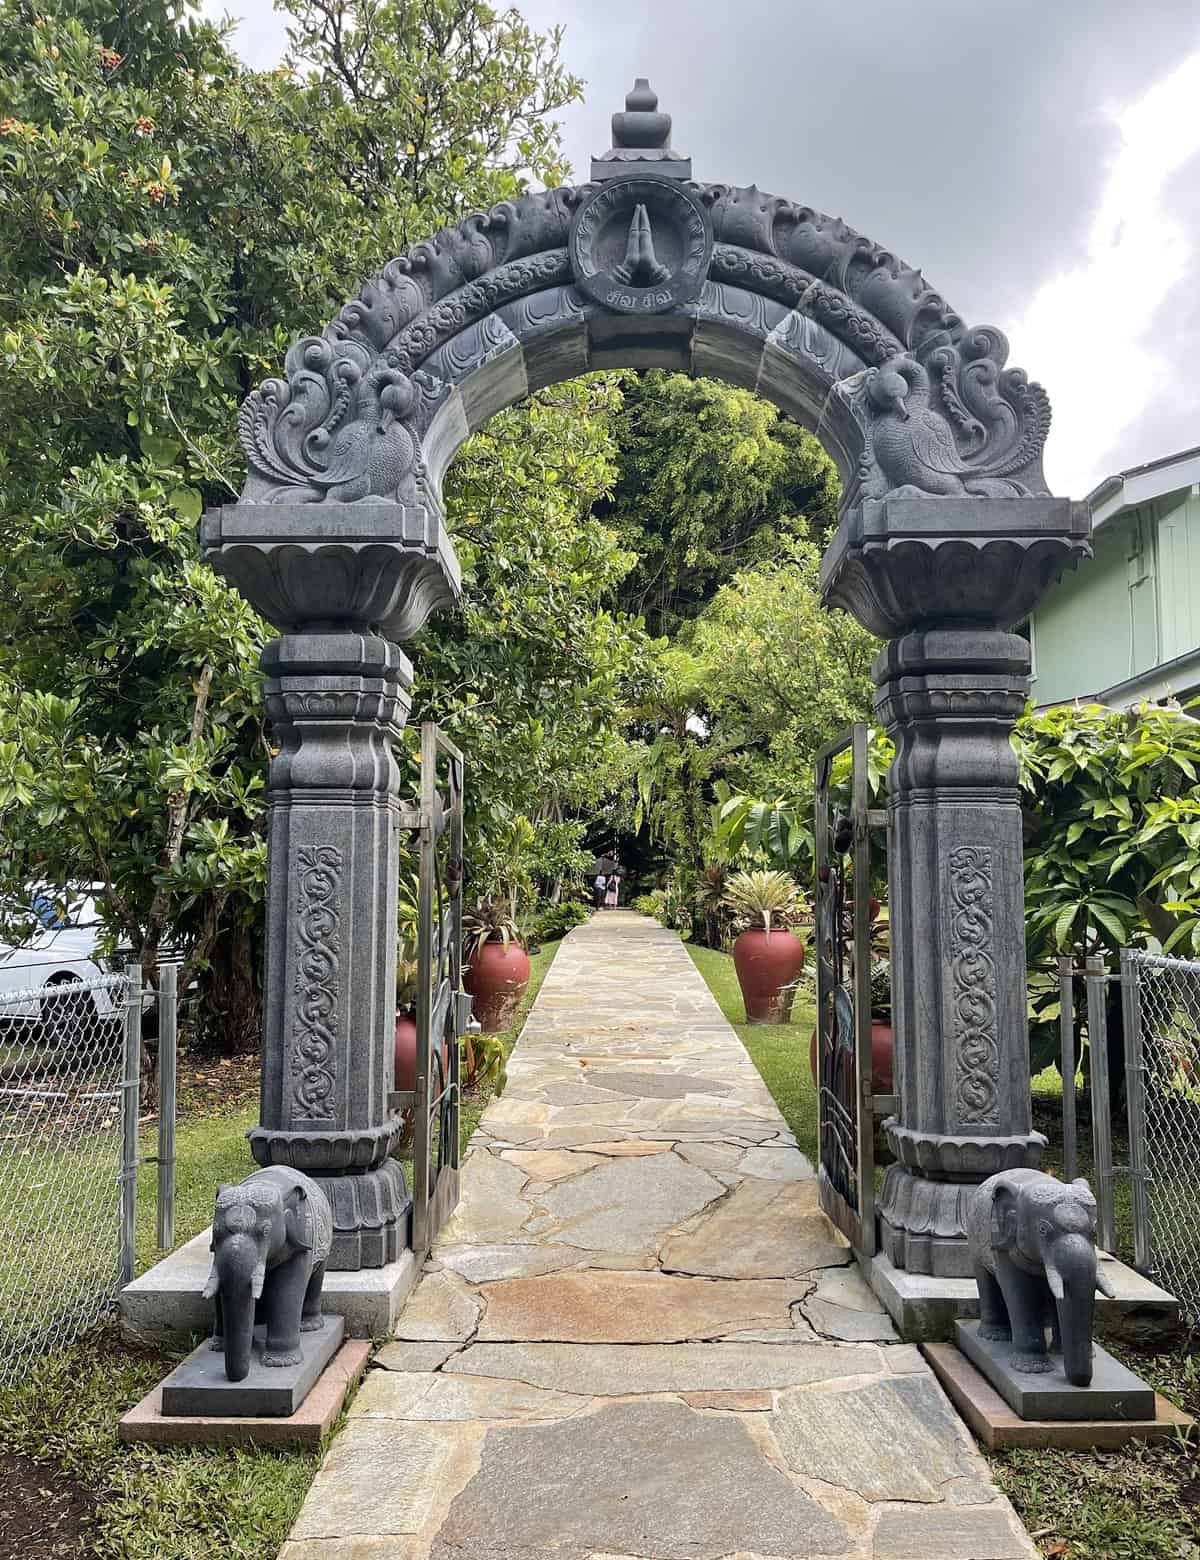 Kauai Hindu Monastery